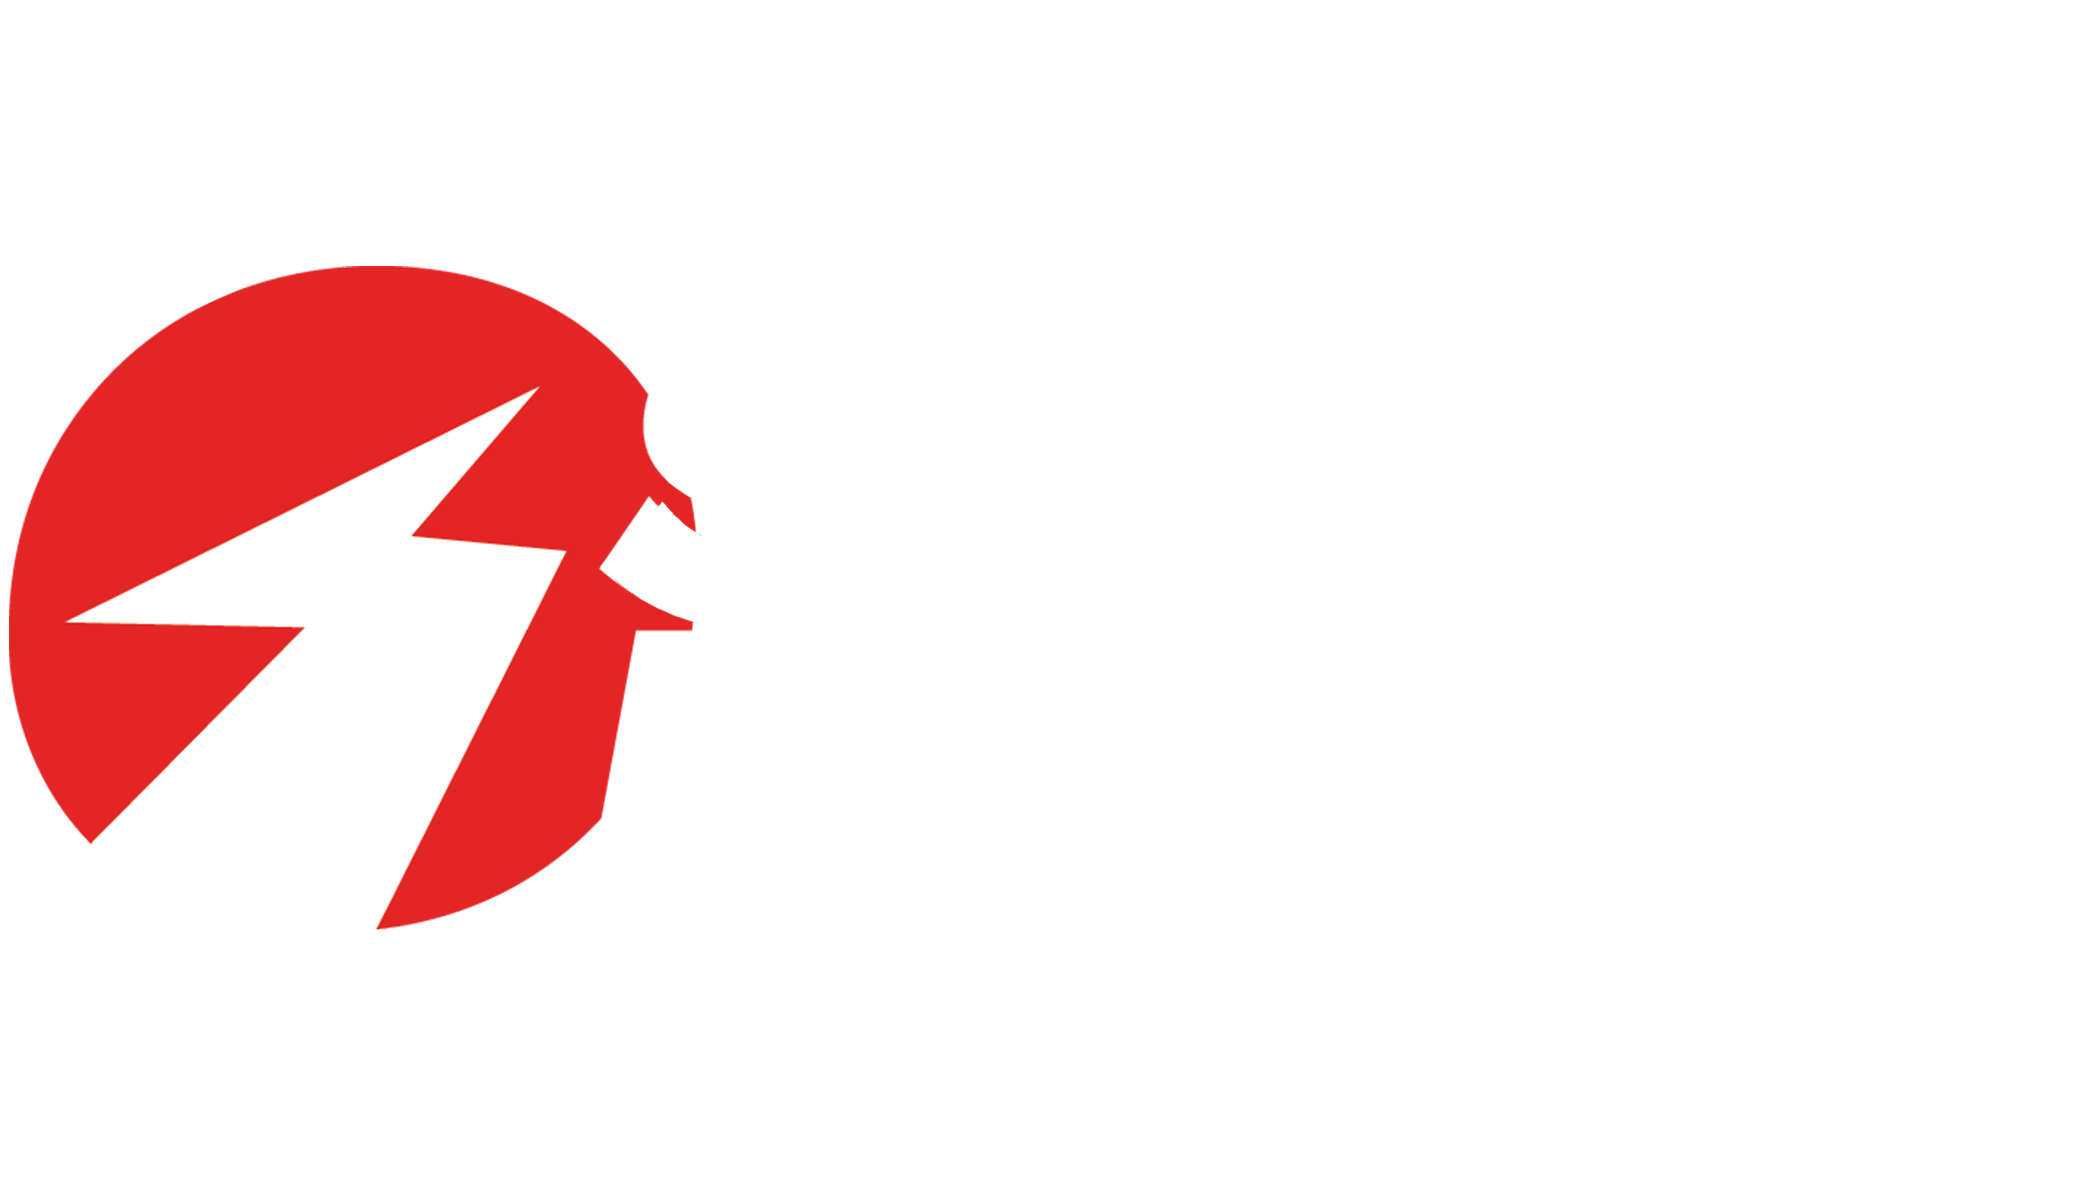 Sealed Power Logo